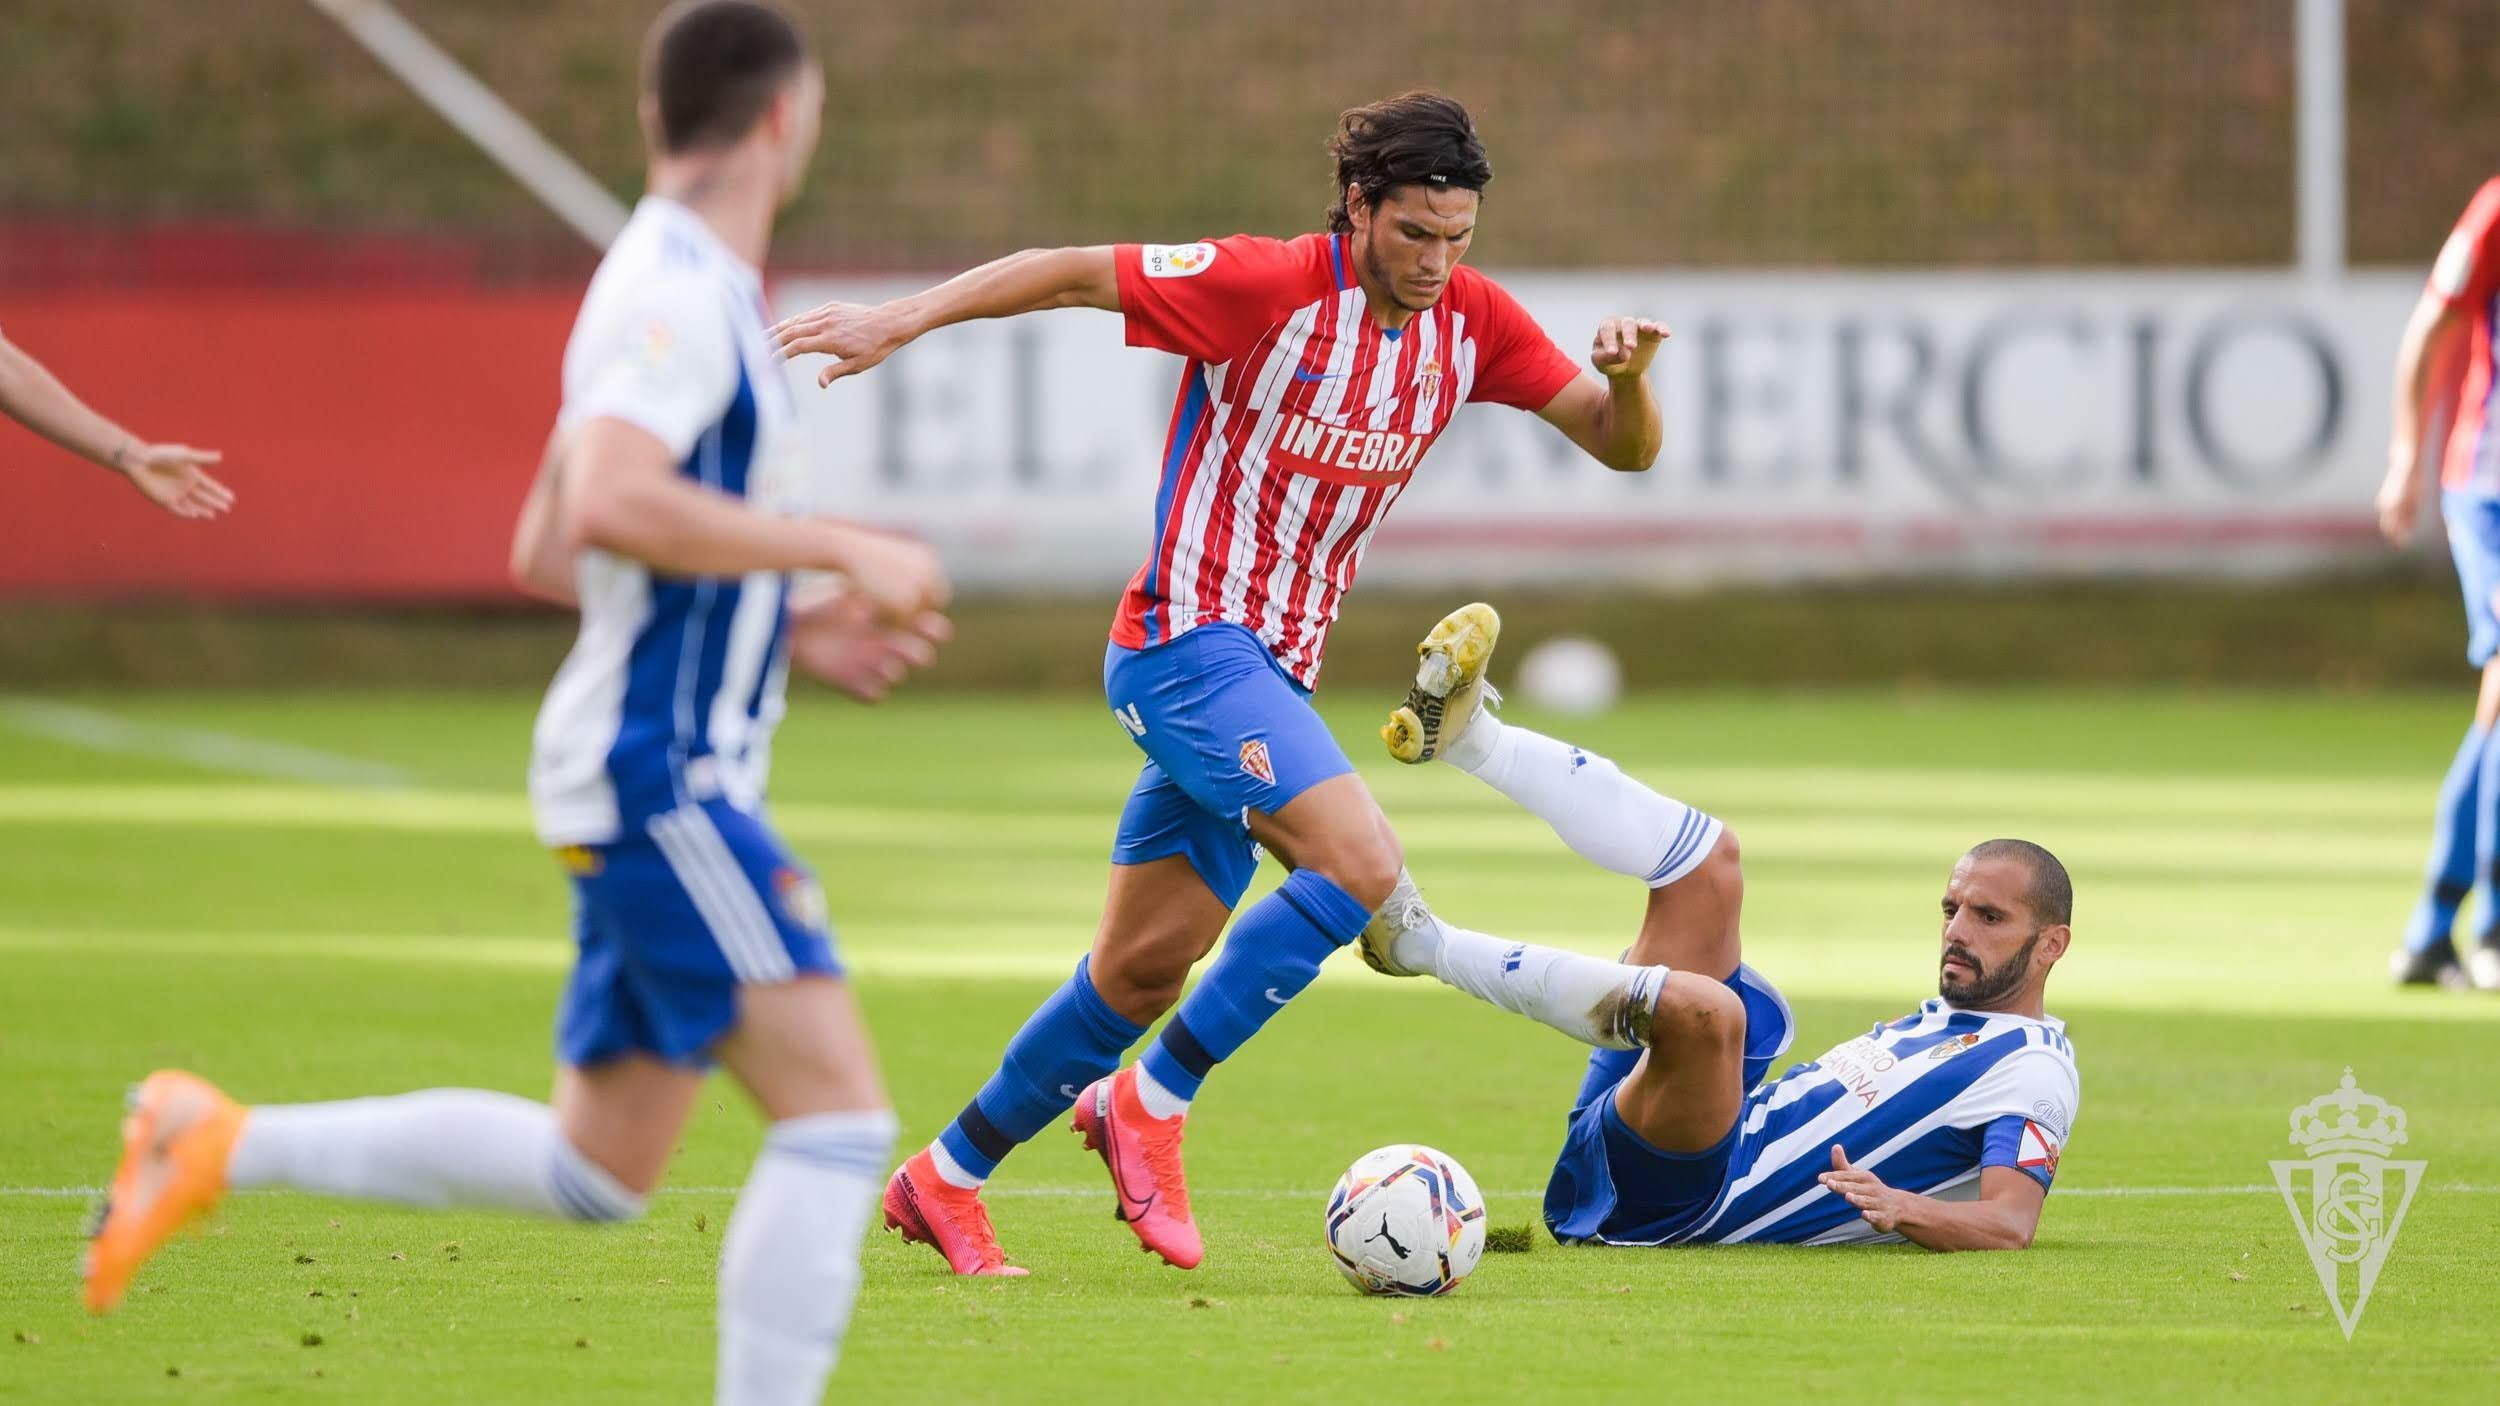 Cristian Salvador conduce el balón en un encuentro entre el Sporting y la Ponferradina esta pretemporada